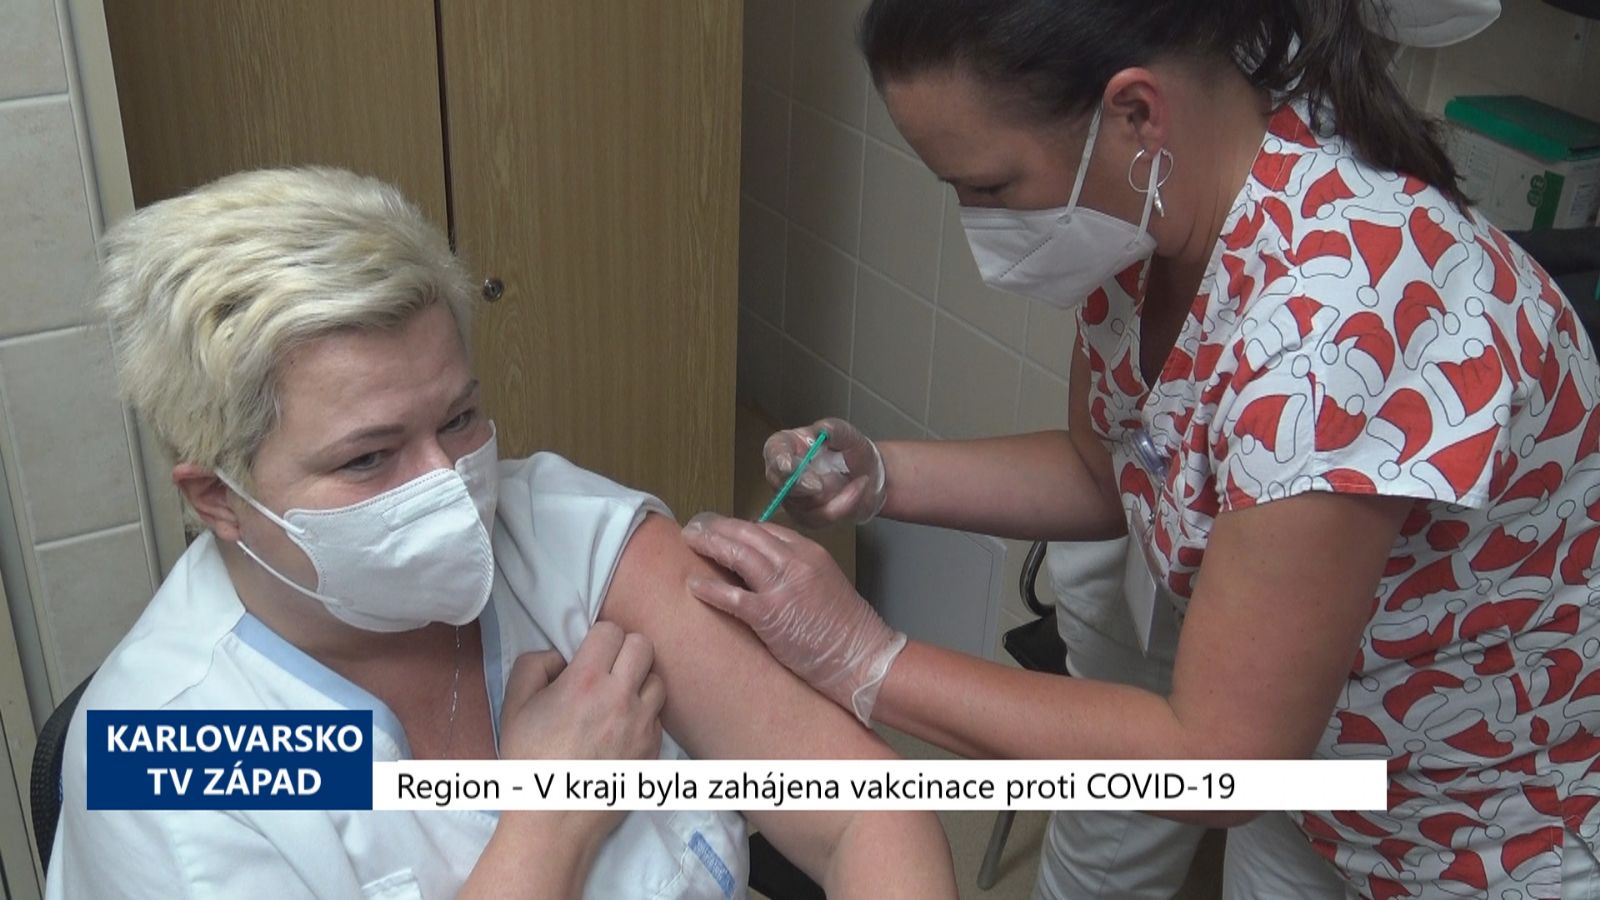 Region: V kraji byla zahájena vakcinace proti COVID-19 (TV Západ)